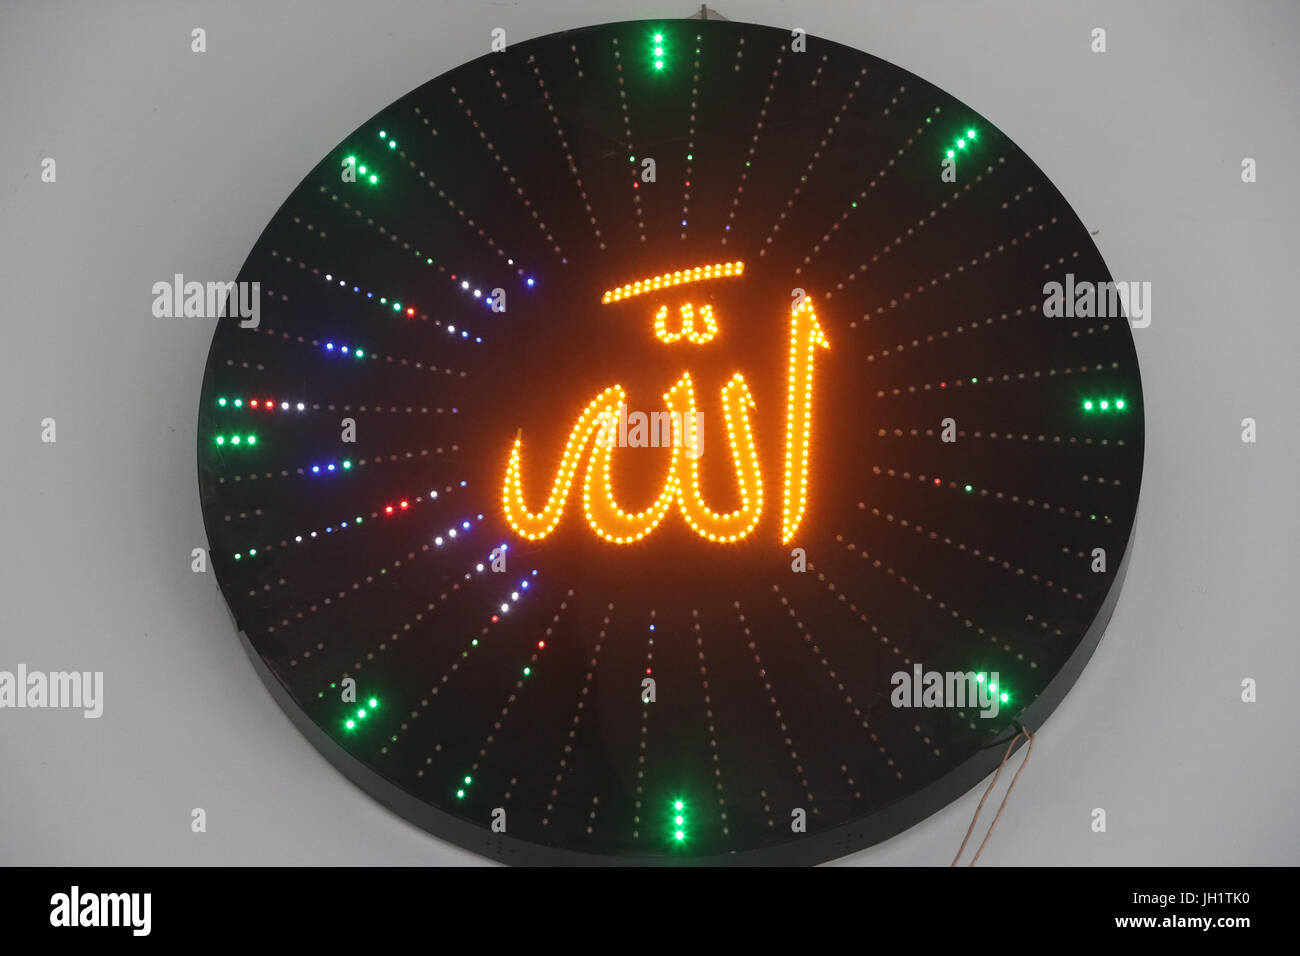 Allah in arabische Schrift - Namen Gottes in arabischer Sprache.  Ho-Chi-Minh-Stadt. Vietnam Stockfotografie - Alamy